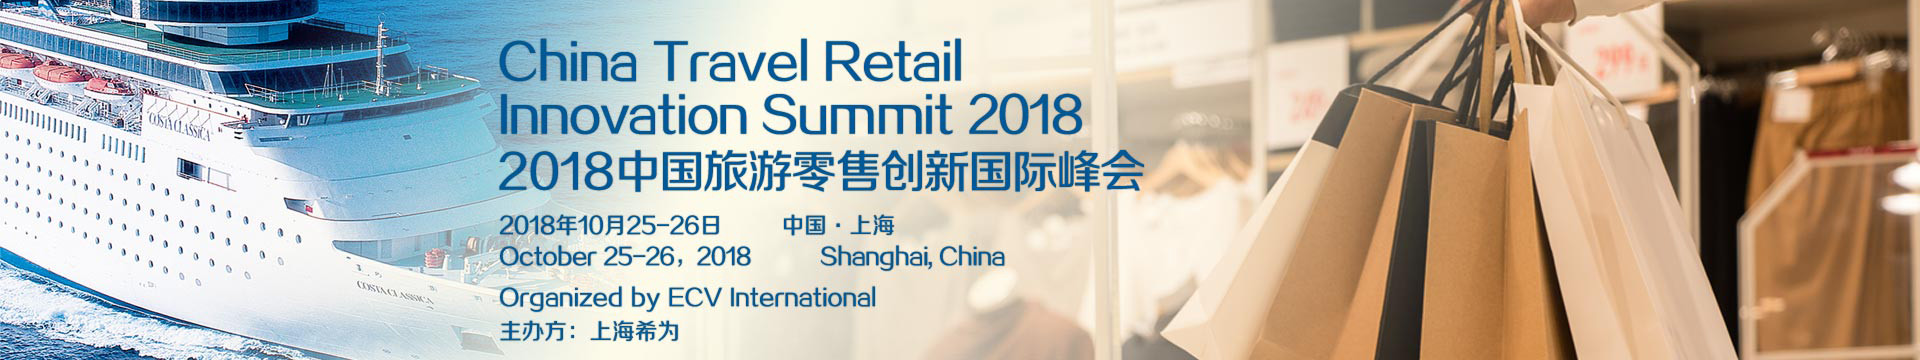 2018年旅游零售创新峰会